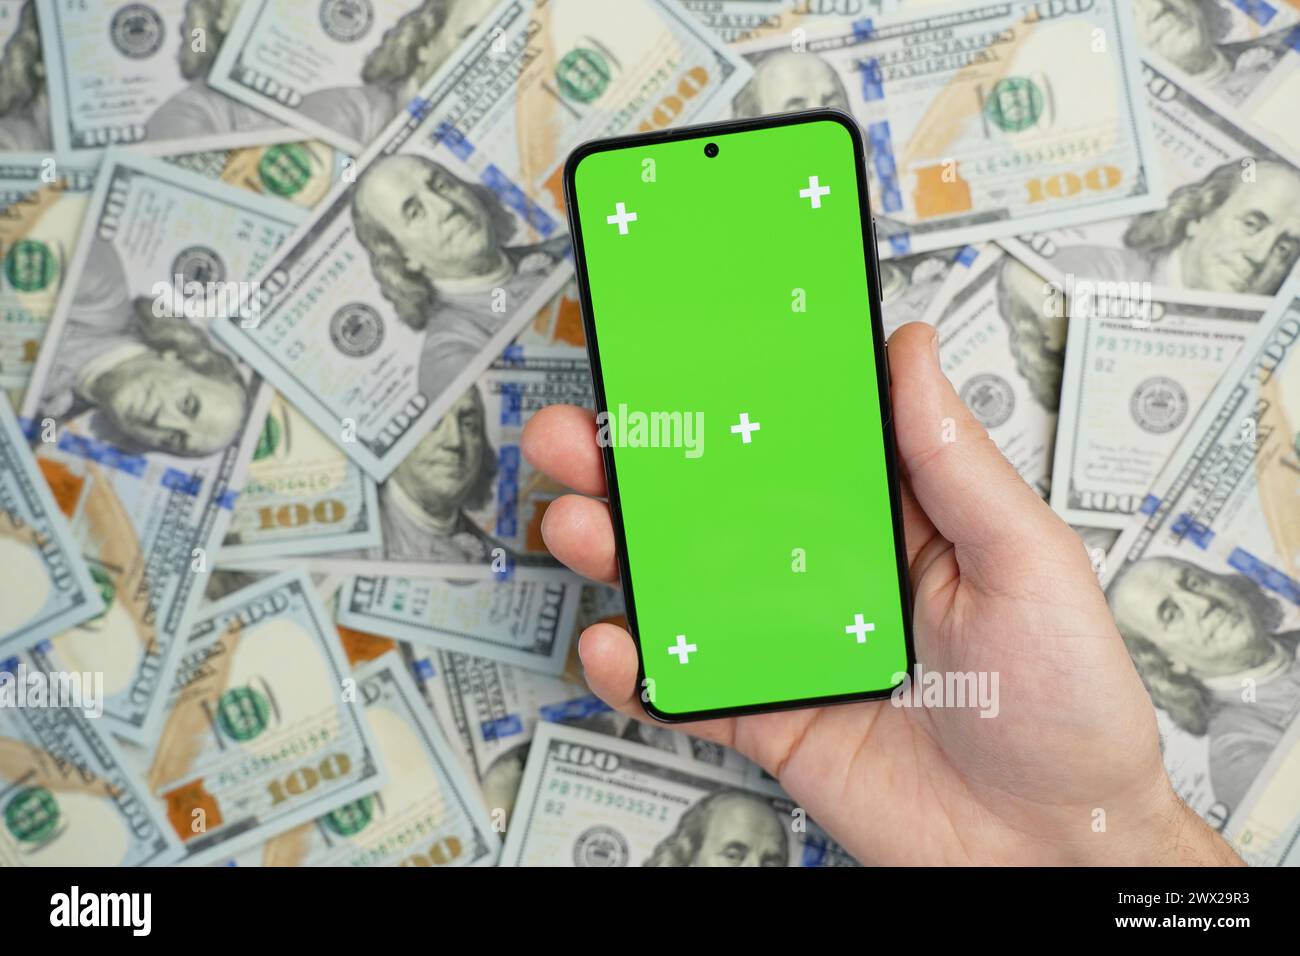 Handheld-Smartphone mit grünem Bildschirm auf einem Stapel von Dollarscheine, Draufsicht. Konzept des Online-Ertrags Stockfoto